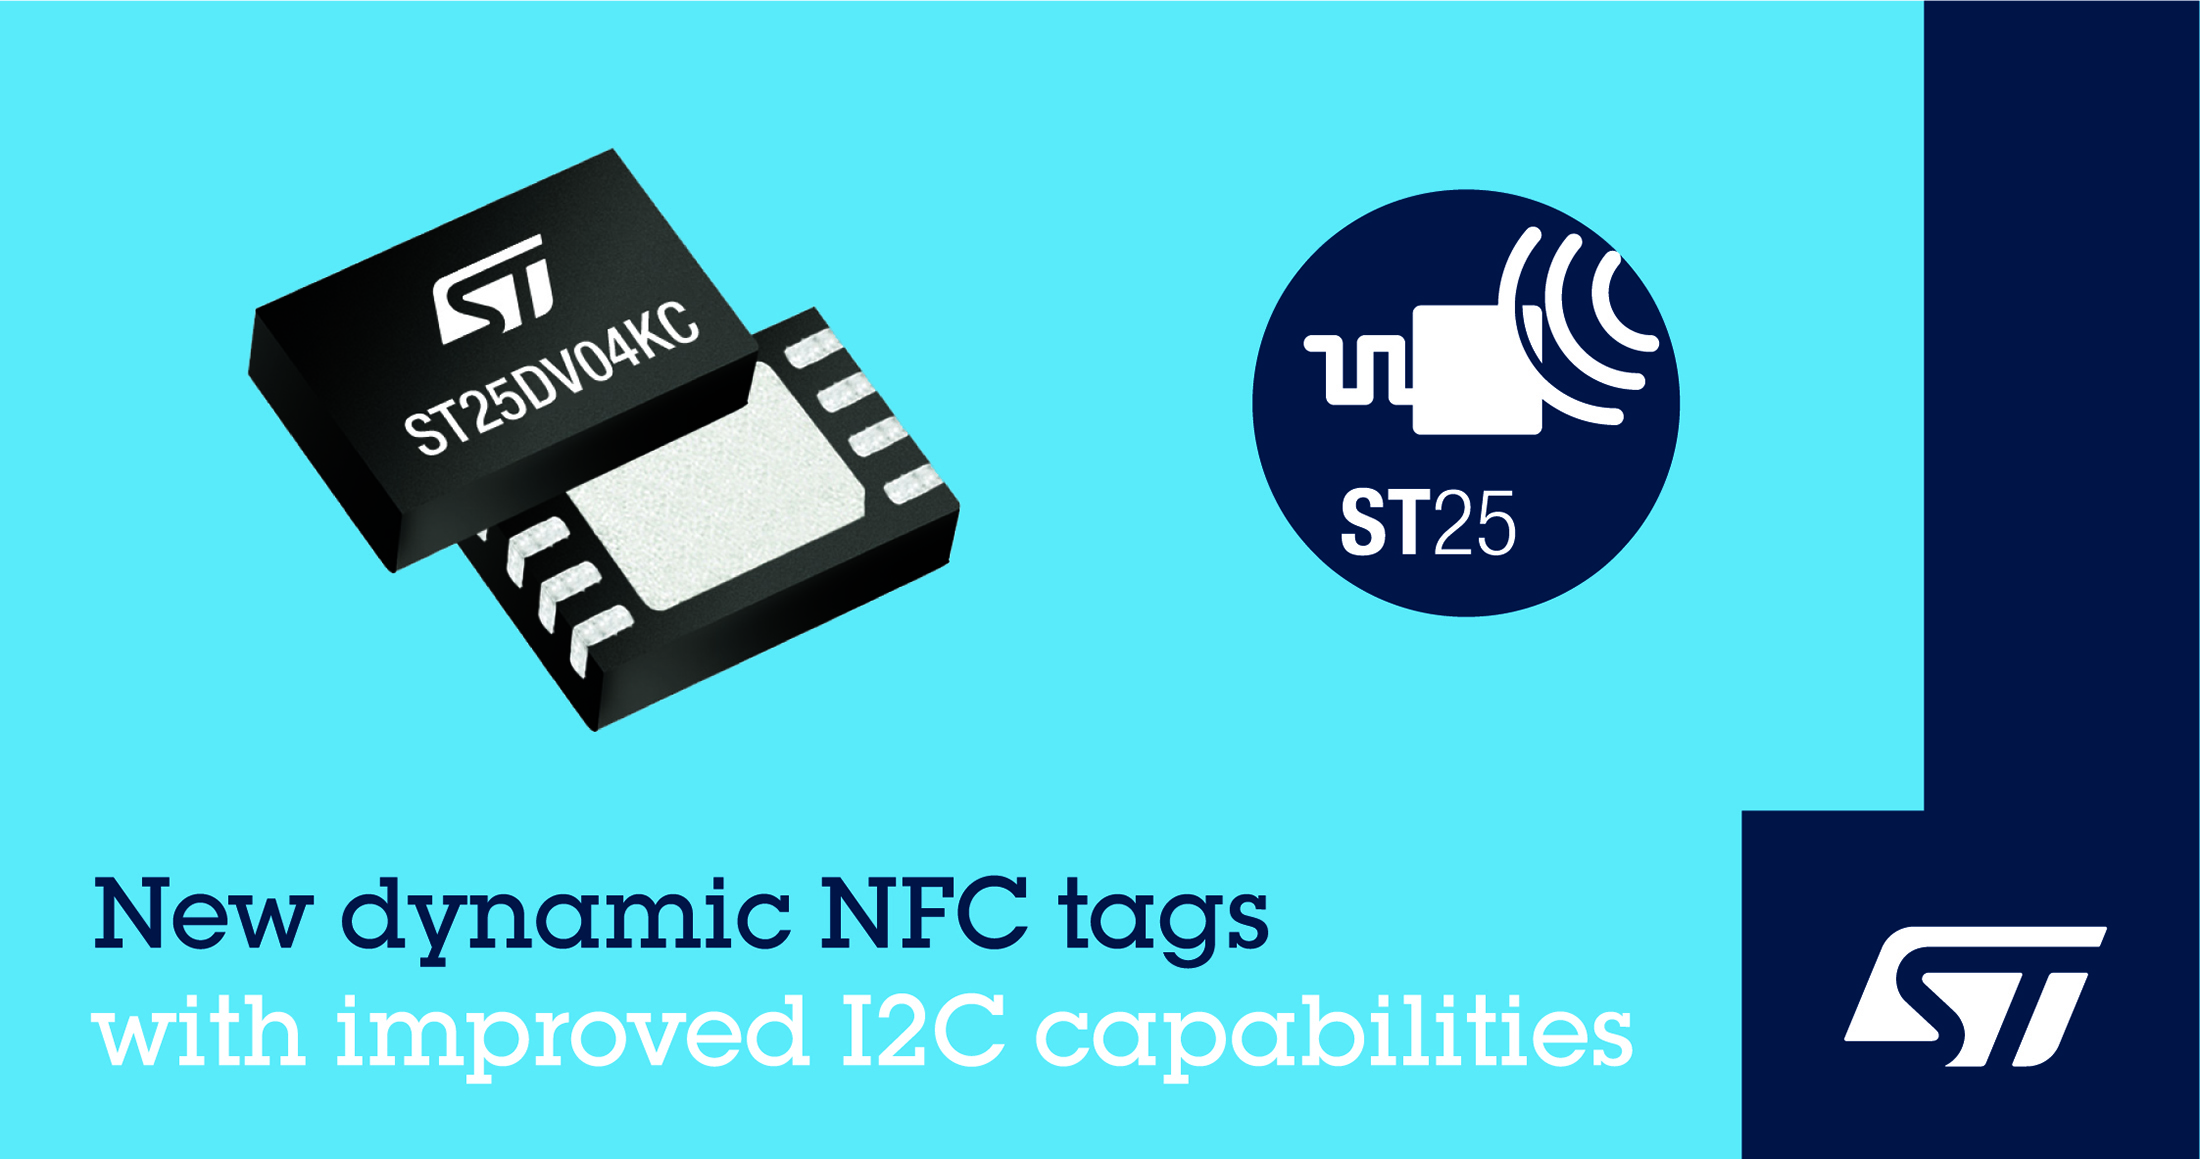 意法半导体增强 ST25DV 双接口 NFC 标签性能 提高应用灵活性和读写速度